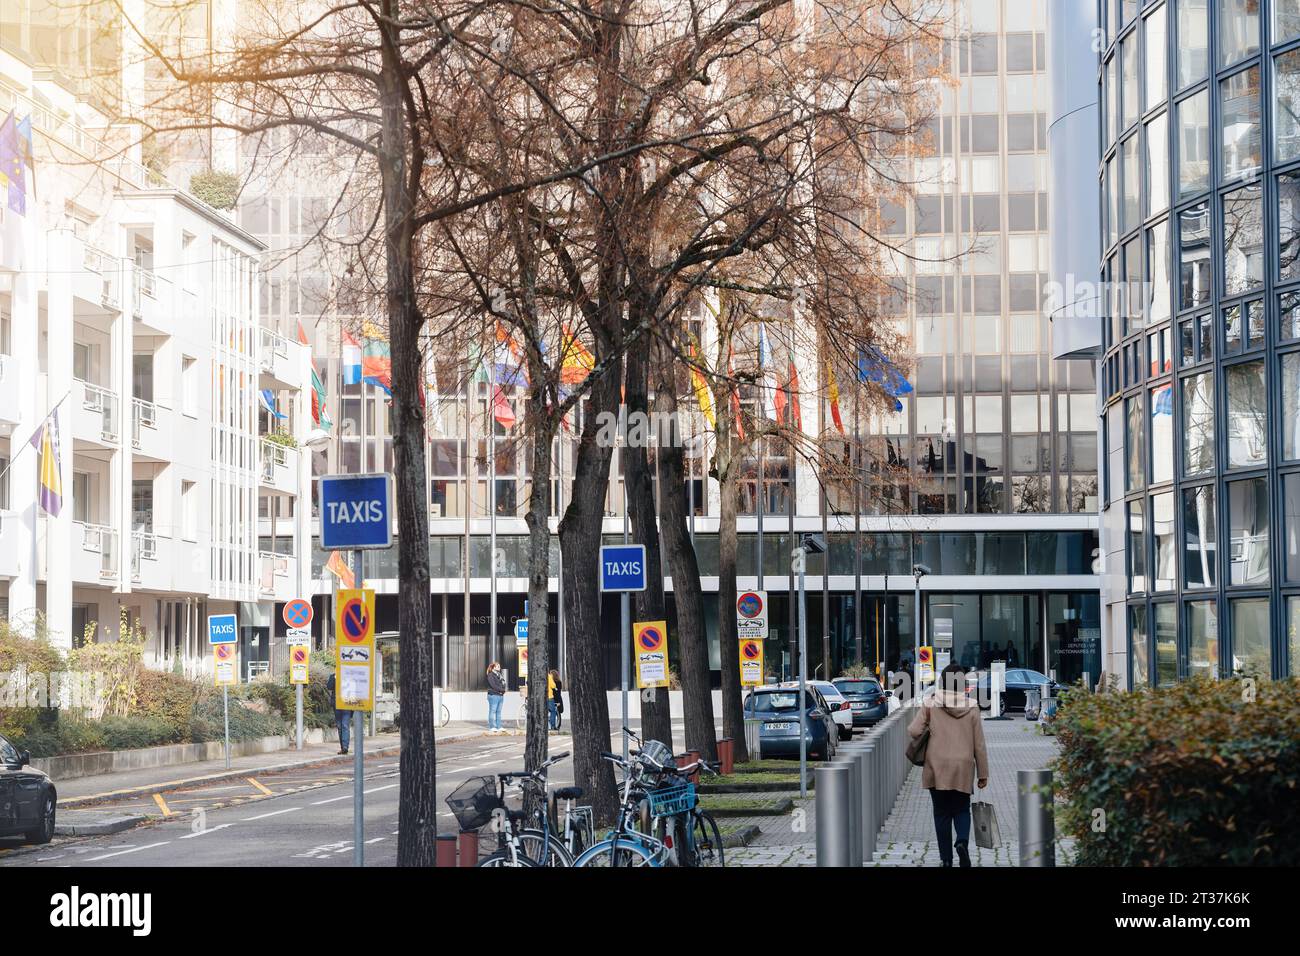 Strasburgo, Francia - 22 novembre 2023: Lungo la strada è presente un cartello taxi, con sullo sfondo l'edificio Winston Churchill del Parlamento europeo. Una donna pedonale può essere vista camminare nelle vicinanze, aggiungendo vita alla scena urbana Foto Stock